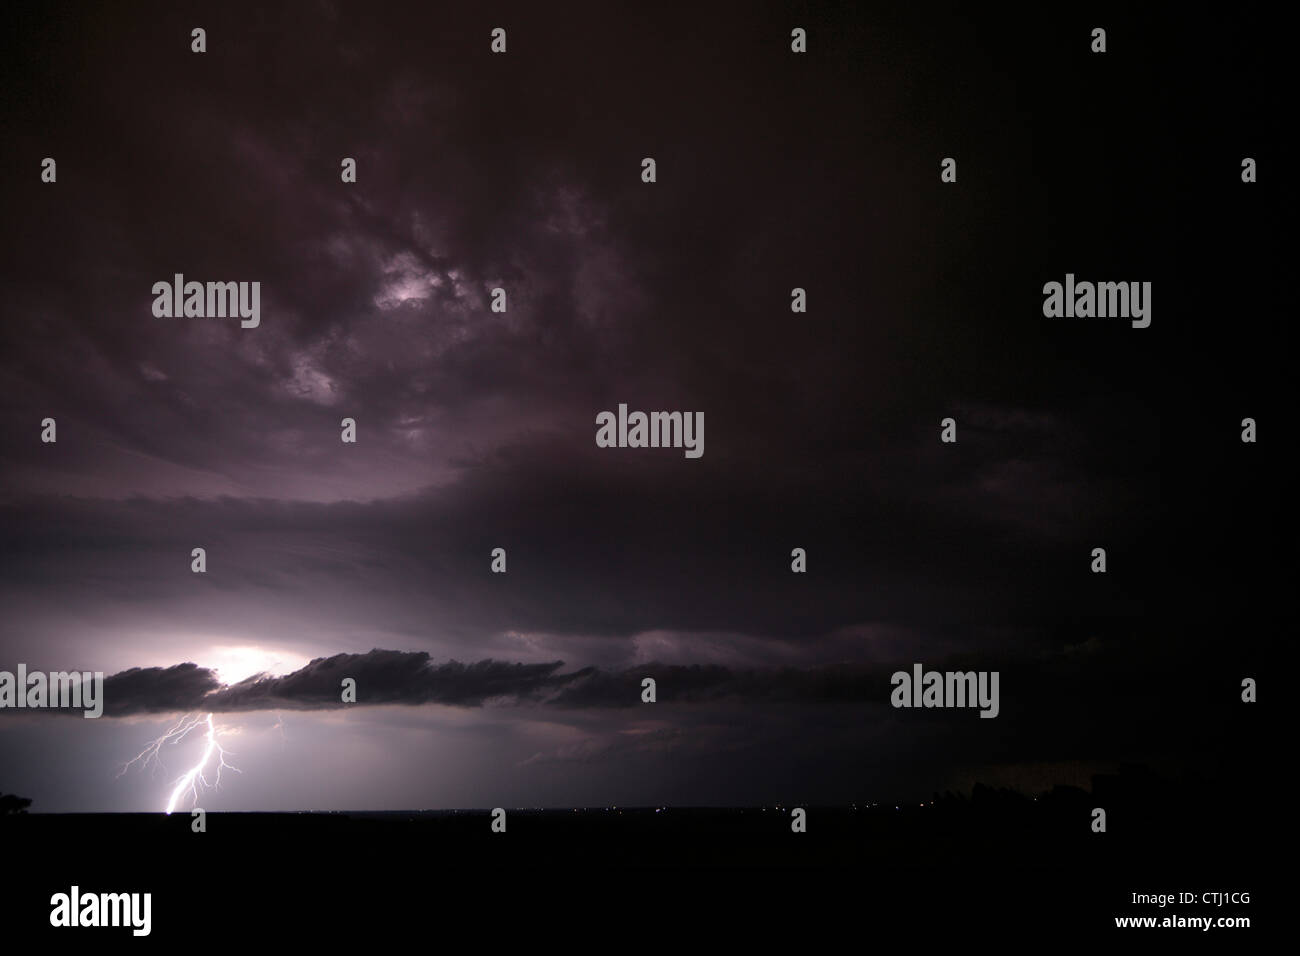 Ein Blitzeinschlag im Land leuchtet eine vielfältige Reihe von Wolken, einschließlich eine lange Scud Cloud. Nacht. Stockfoto